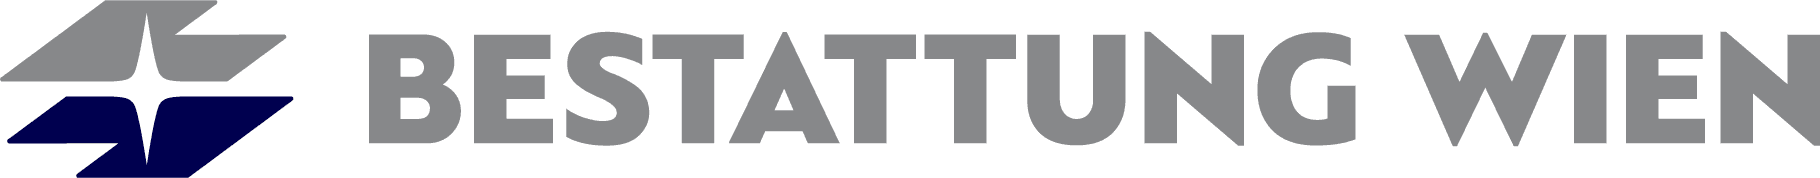 Logo BESTATTUNG WIEN - Kundenservice Ottakring